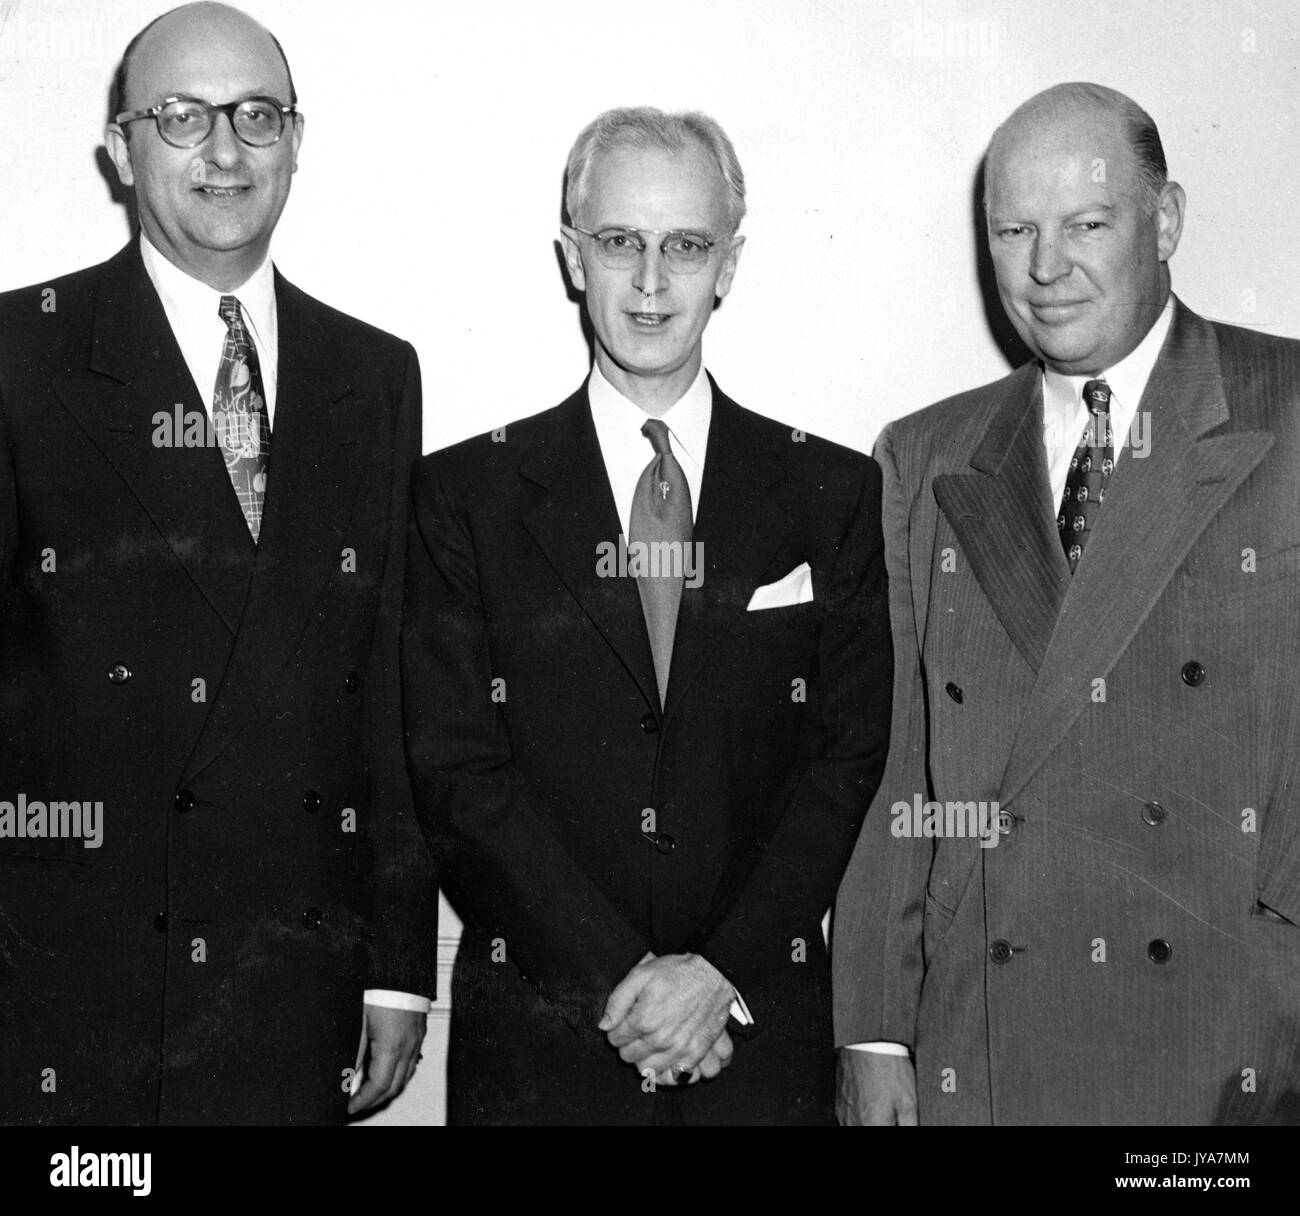 Executive Ben Cohen, US-amerikanischen Fernsehen host Lynn Poole, und Dr Allen B DuMont stehend von links nach rechts sind, werden Sie alle tragen Anzüge und Krawatten, Sie Lächeln für die Kamera, 1950. Stockfoto